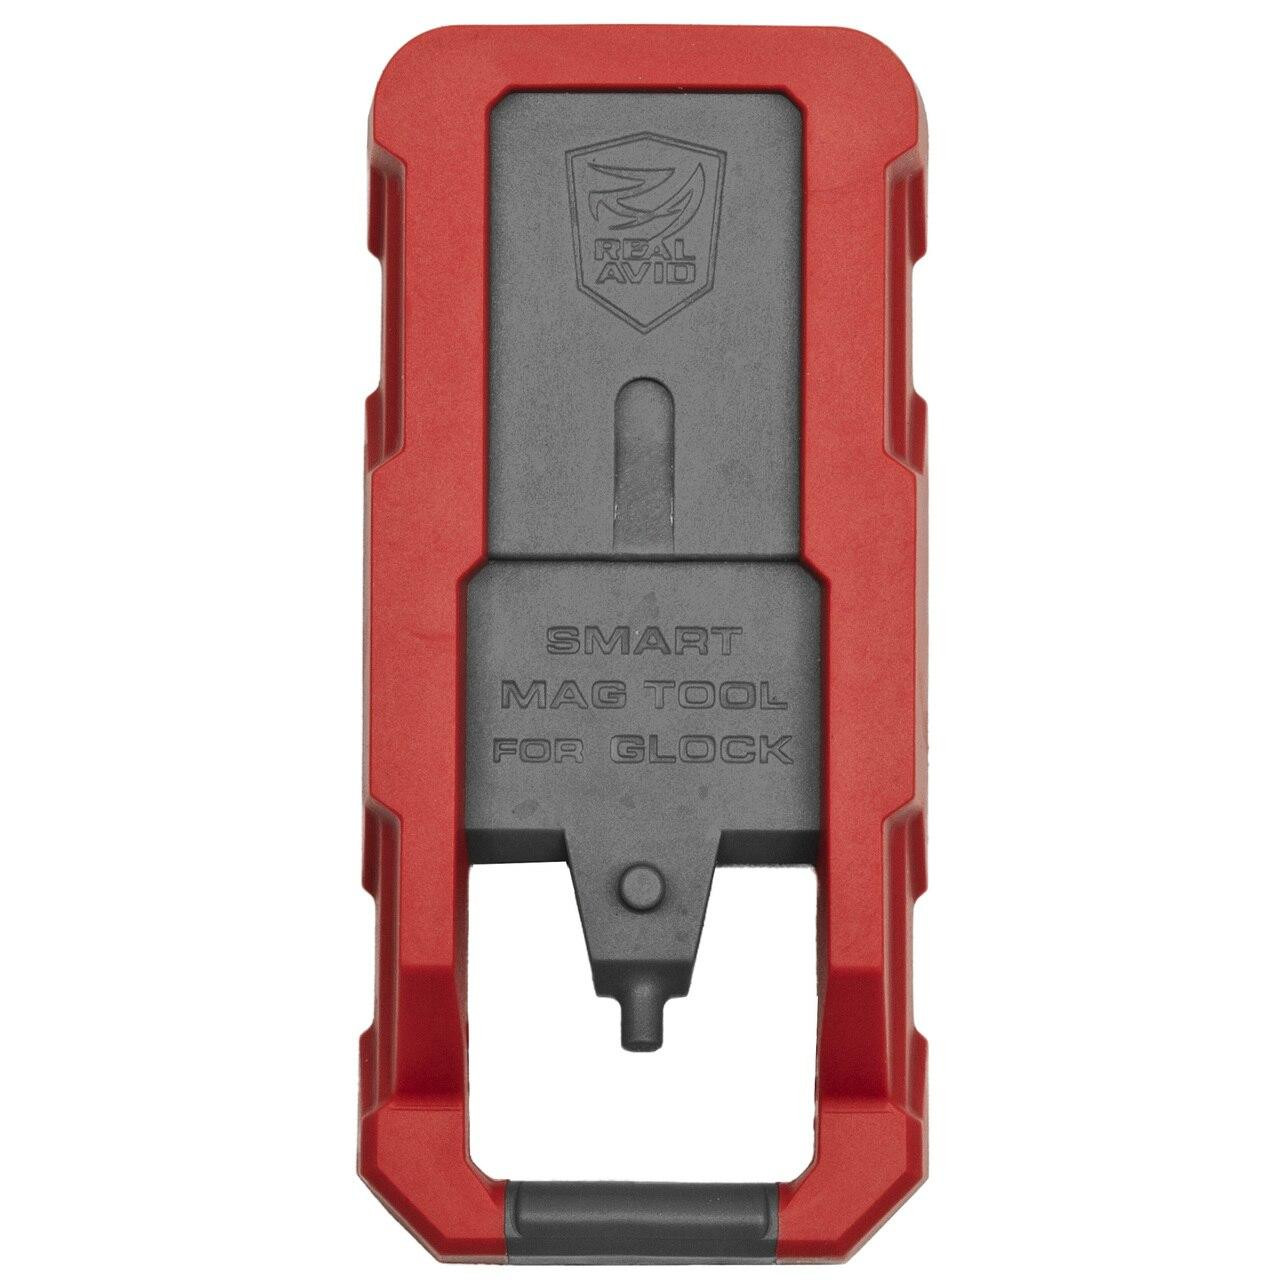 Real Avid Real Avid Smart Mag Tool For Glock 813119012945